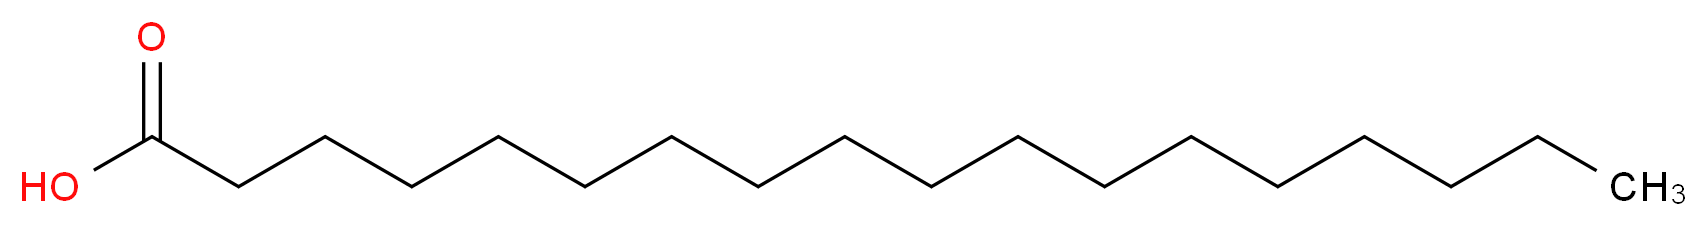 棕榈酸 - 硬脂酸混合物_分子结构_CAS_67701-03-5)